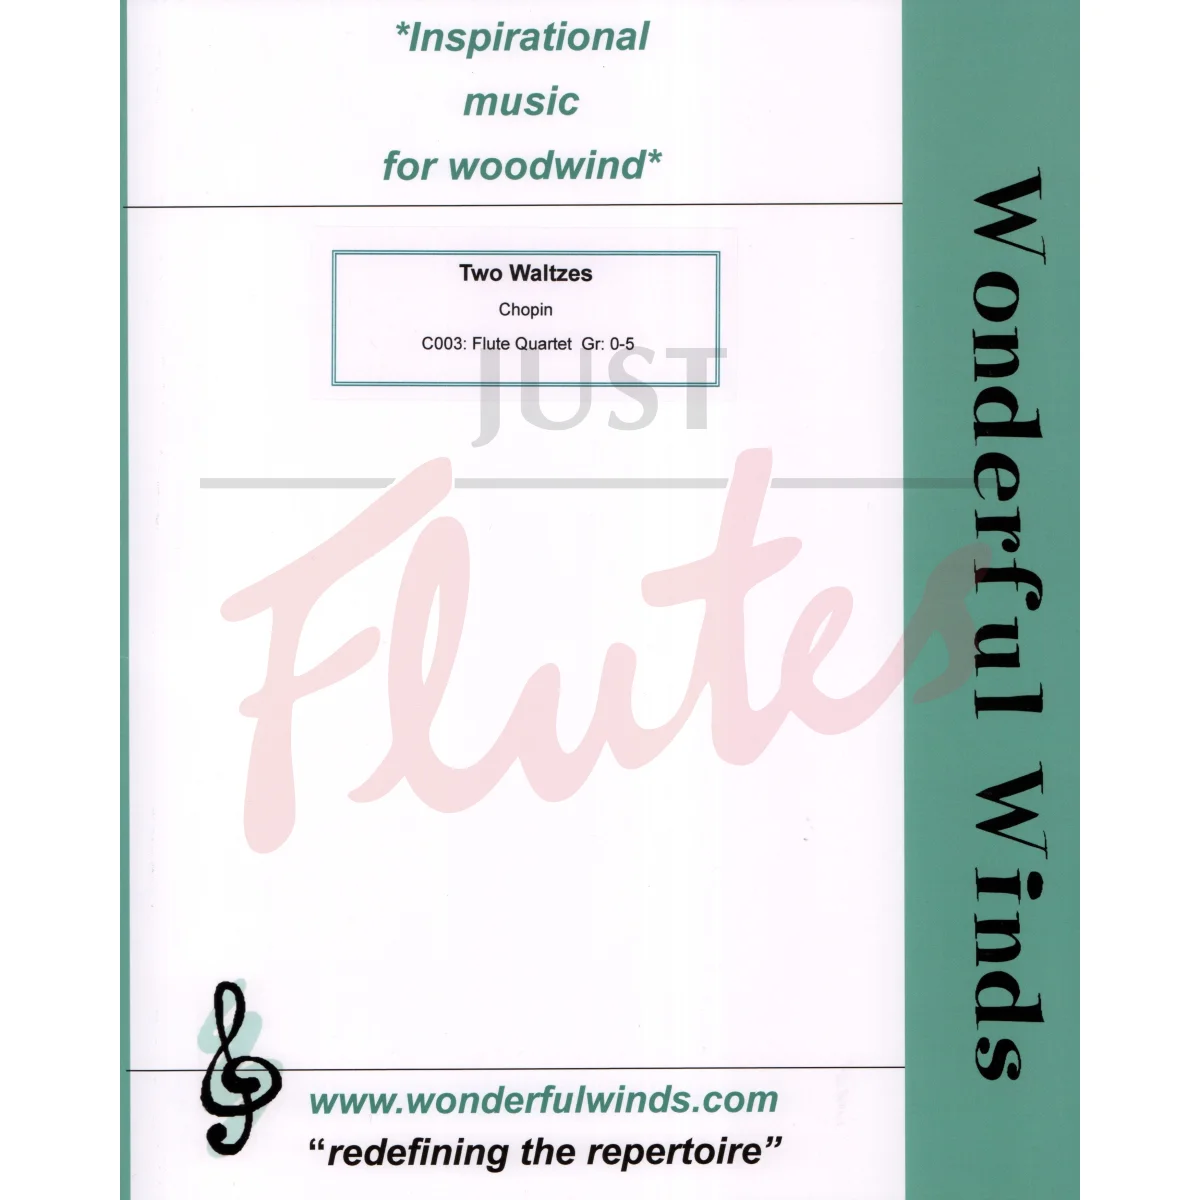 Two Waltzes for Flute Quartet